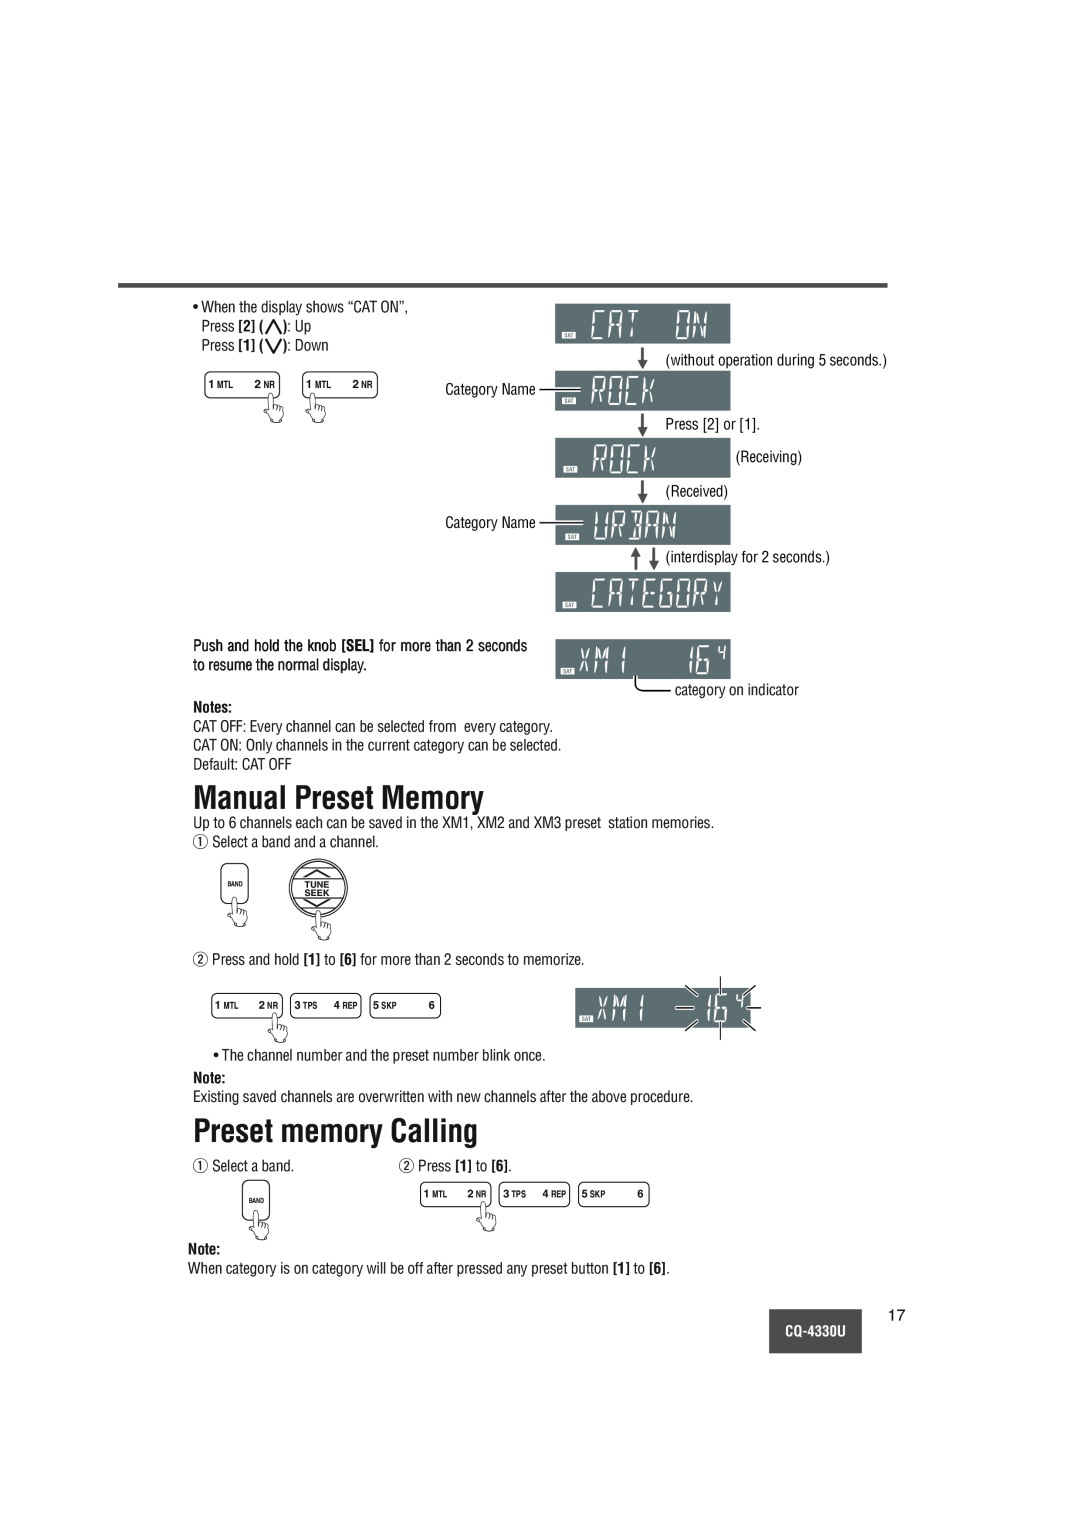 Panasonic CQ-4330U manual Manual Preset Memory, Preset memory Calling 